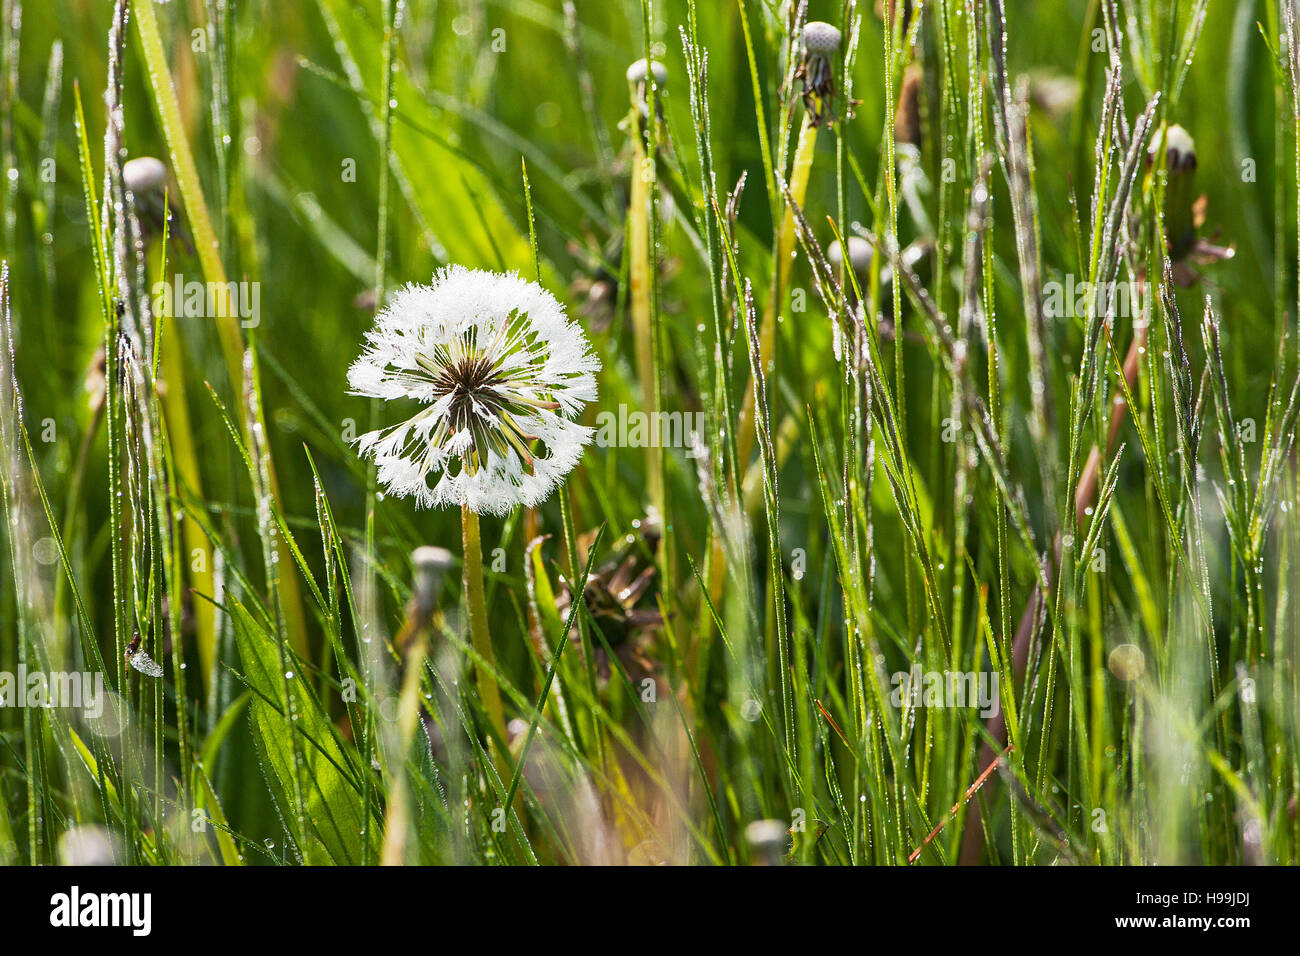 Le pissenlit Taraxacum spp. graines dans l'eau meadows Ringwood Hampshire England UK Banque D'Images